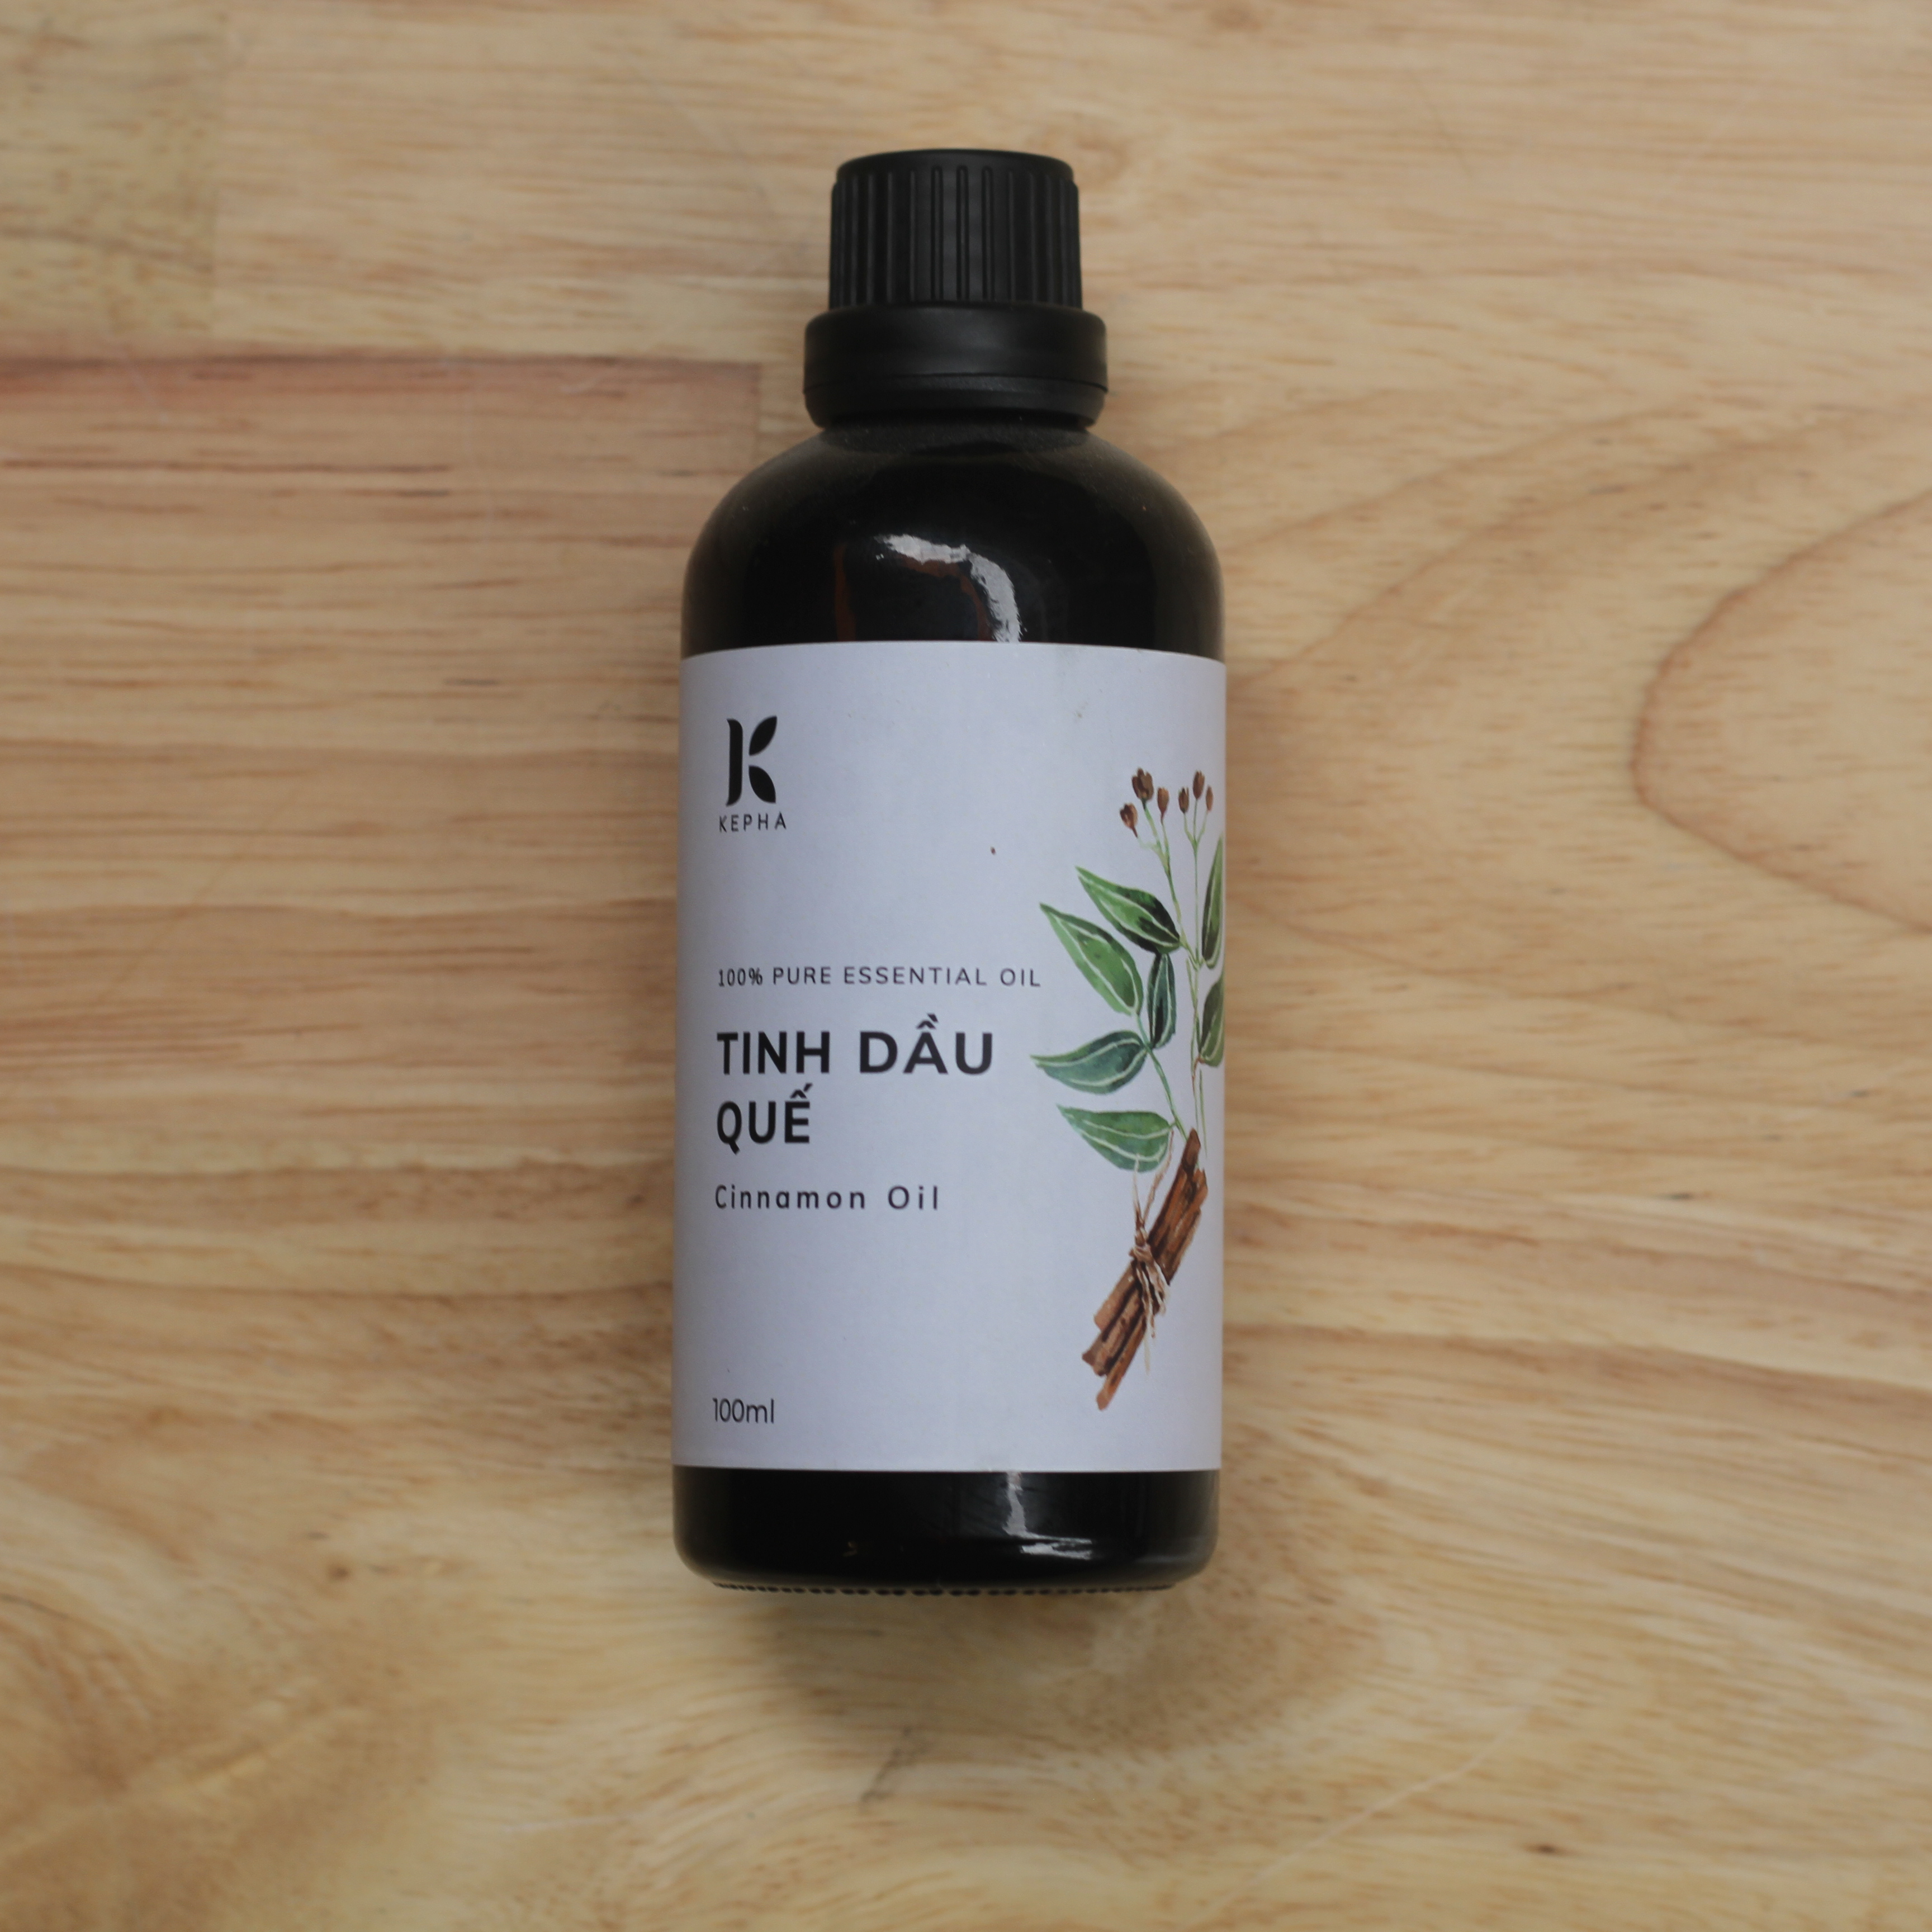 Tinh dầu Quế Kepha 100ml - Cassia Essential oil - Nguyên chất 100% - Khử mùi, lau nhà, làm sạch không khí